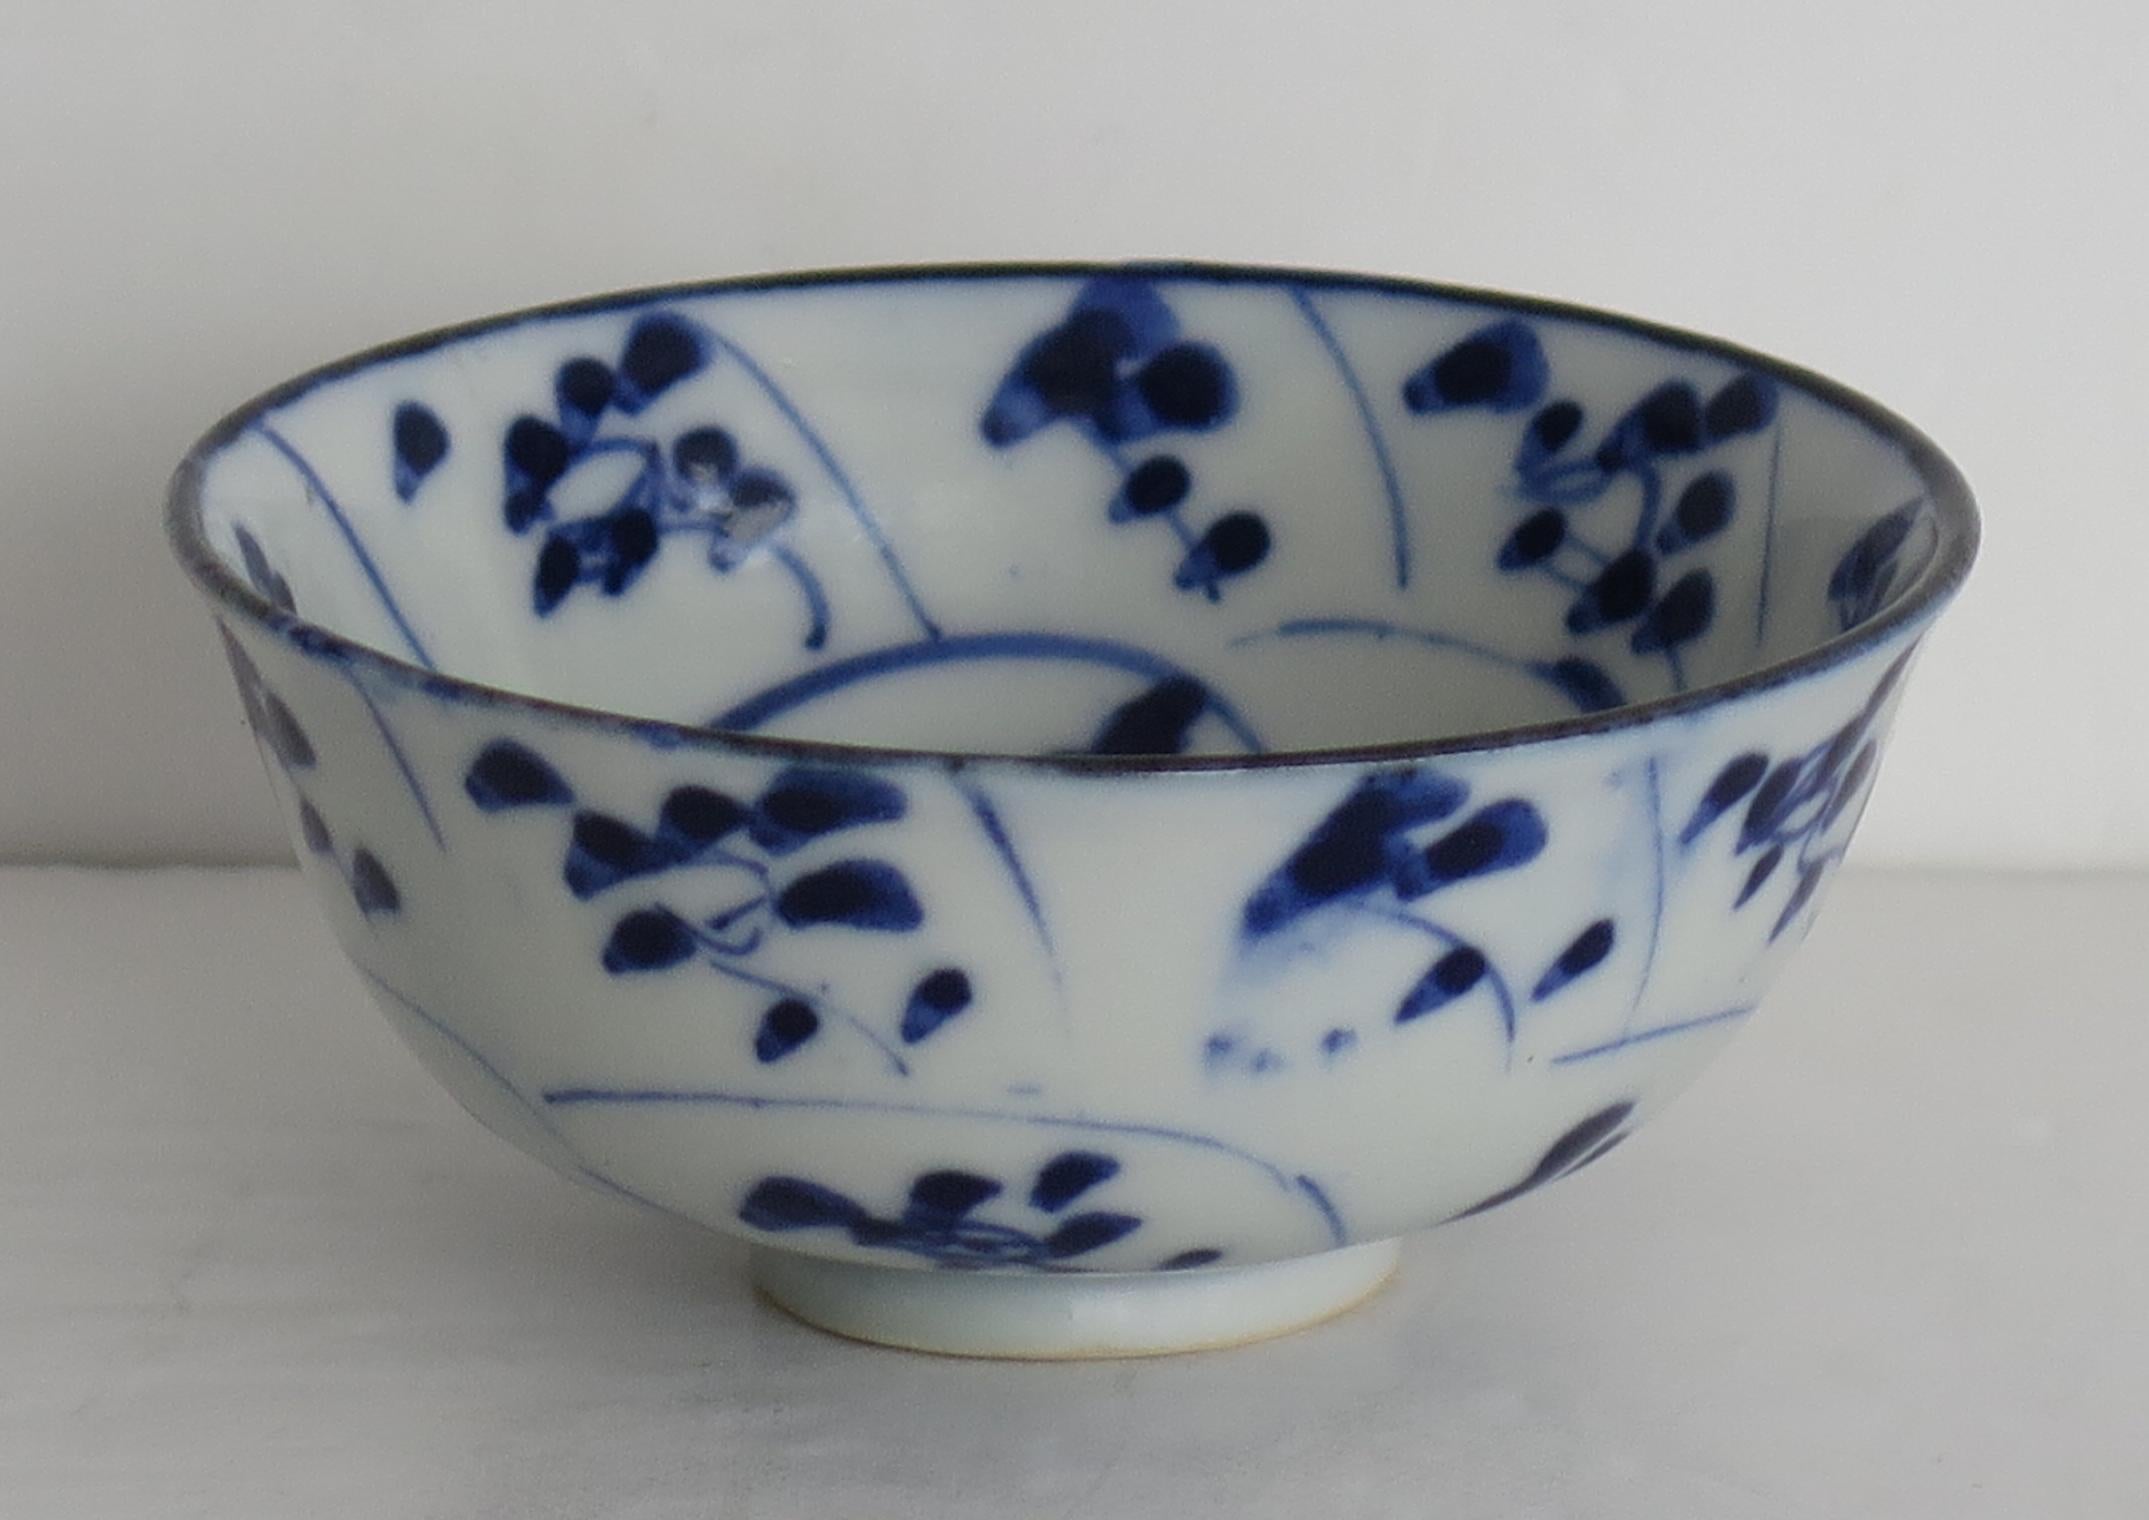 Il s'agit d'un bon bol à thé en porcelaine chinoise que nous attribuons à une pièce de la cargaison de l'épave de Tec Sing, du début du C.I.C., vers 1820.

La coupe est circulaire et bien potée à la main, reposant sur un pied bas.

Le bol est